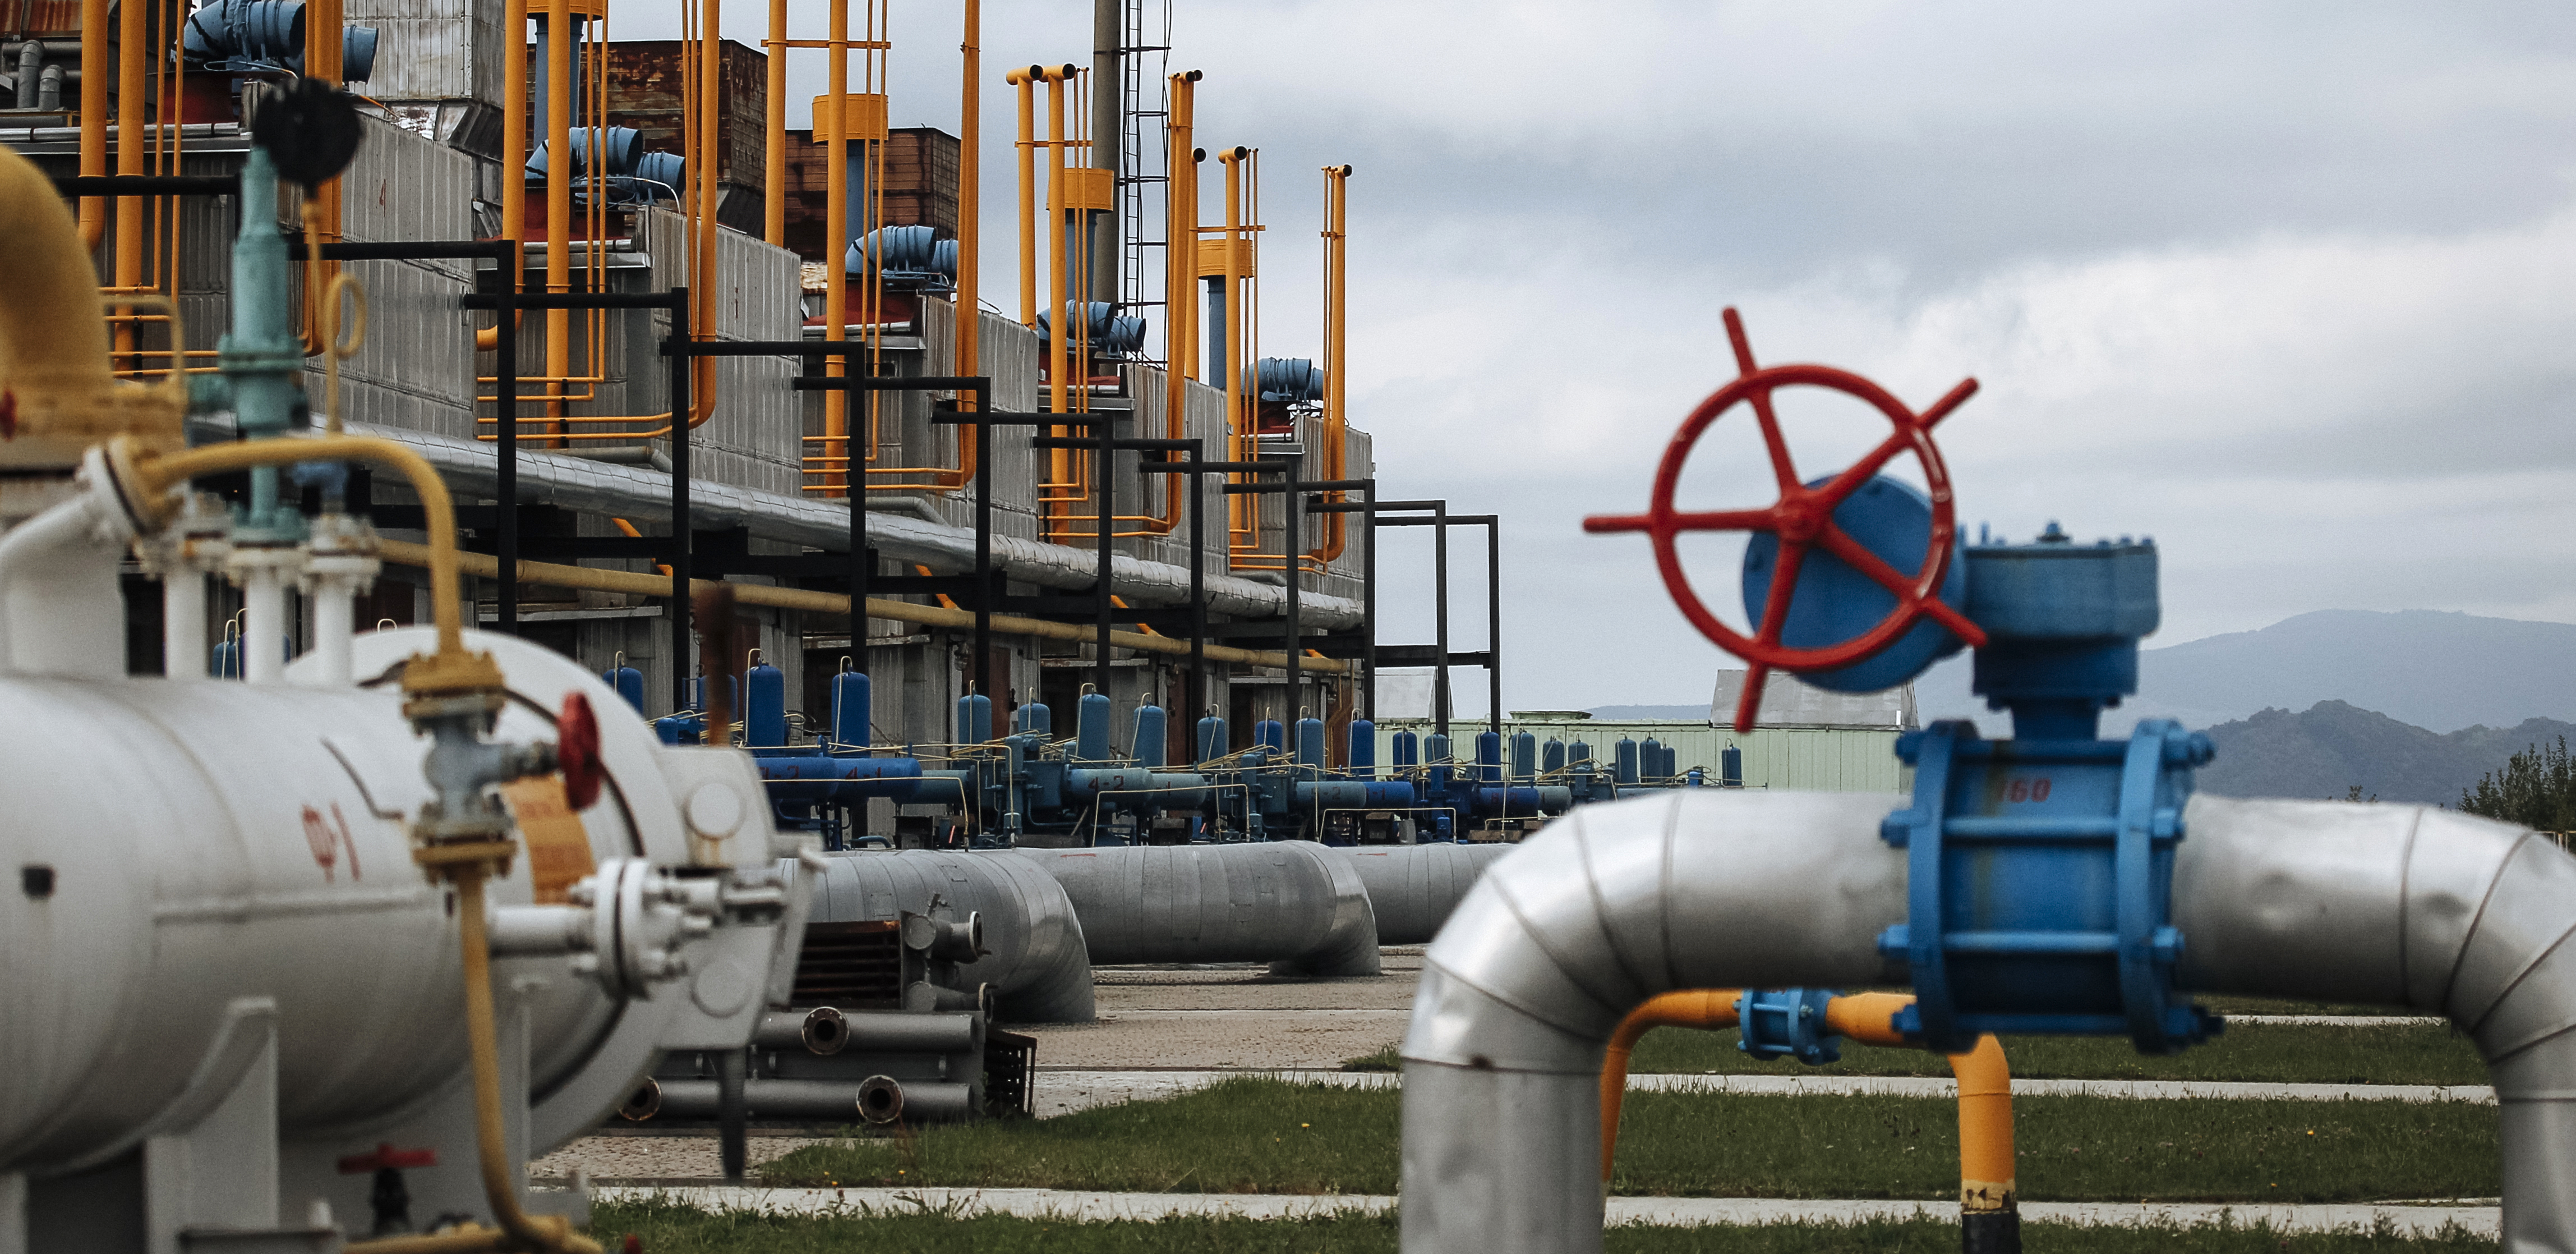 ODLUKA NAJAVLJENA U OKTOBRU Velika Britanija obustavlja uvoz tečnog gasa iz Rusije